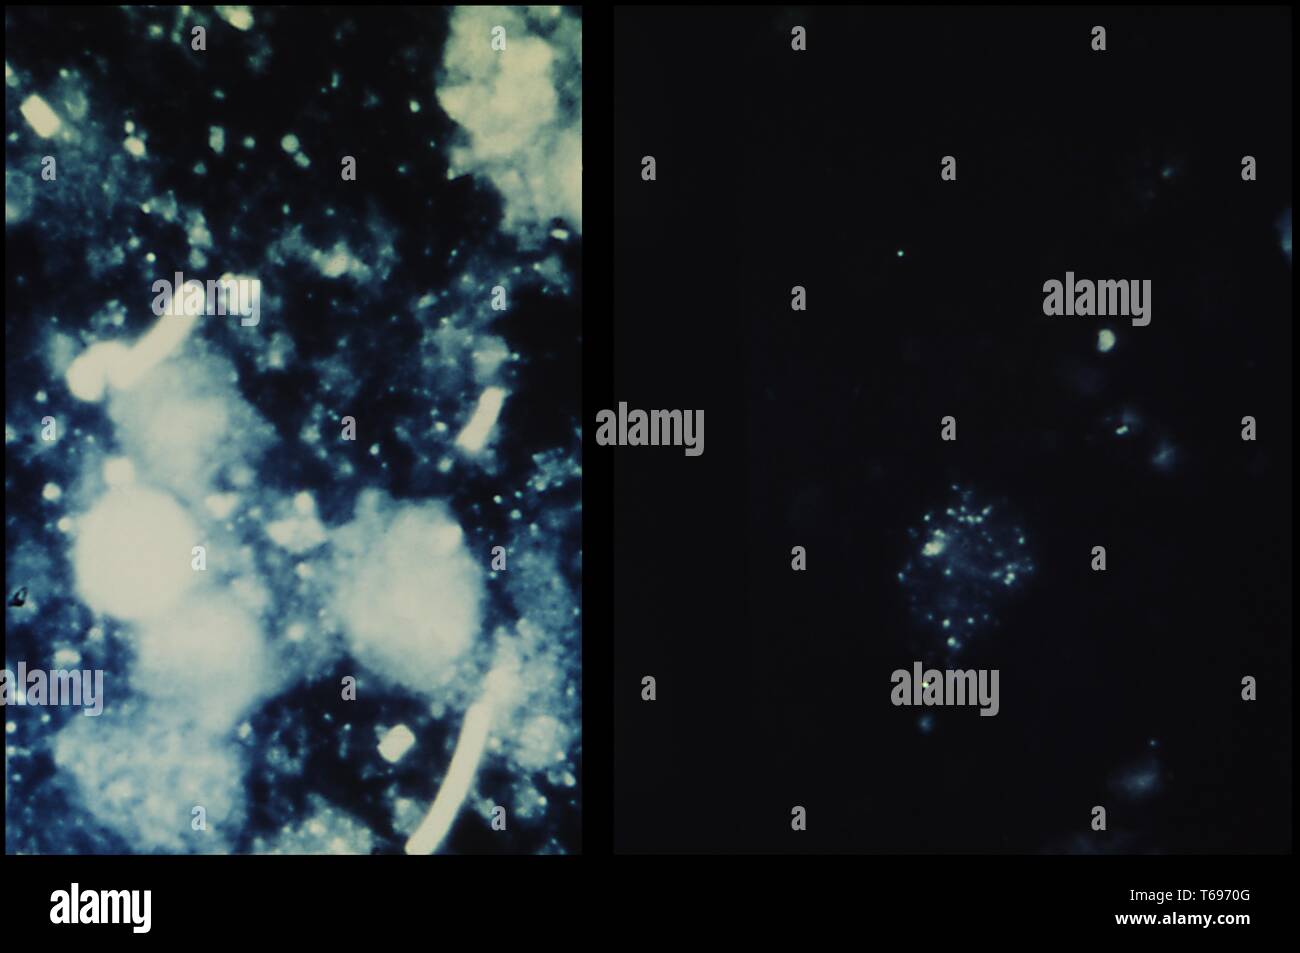 Photomicrograph des Lymphknotens Eindruck bestreichen, Bacillus anthracis (der Erreger von Milzbrand) auf der linken und nicht-infizierten Gewebe auf der rechten Seite, 1966. Bild mit freundlicher Genehmigung Zentren für Krankheitskontrolle und Prävention (CDC)/Sidney J. Benesky. () Stockfoto